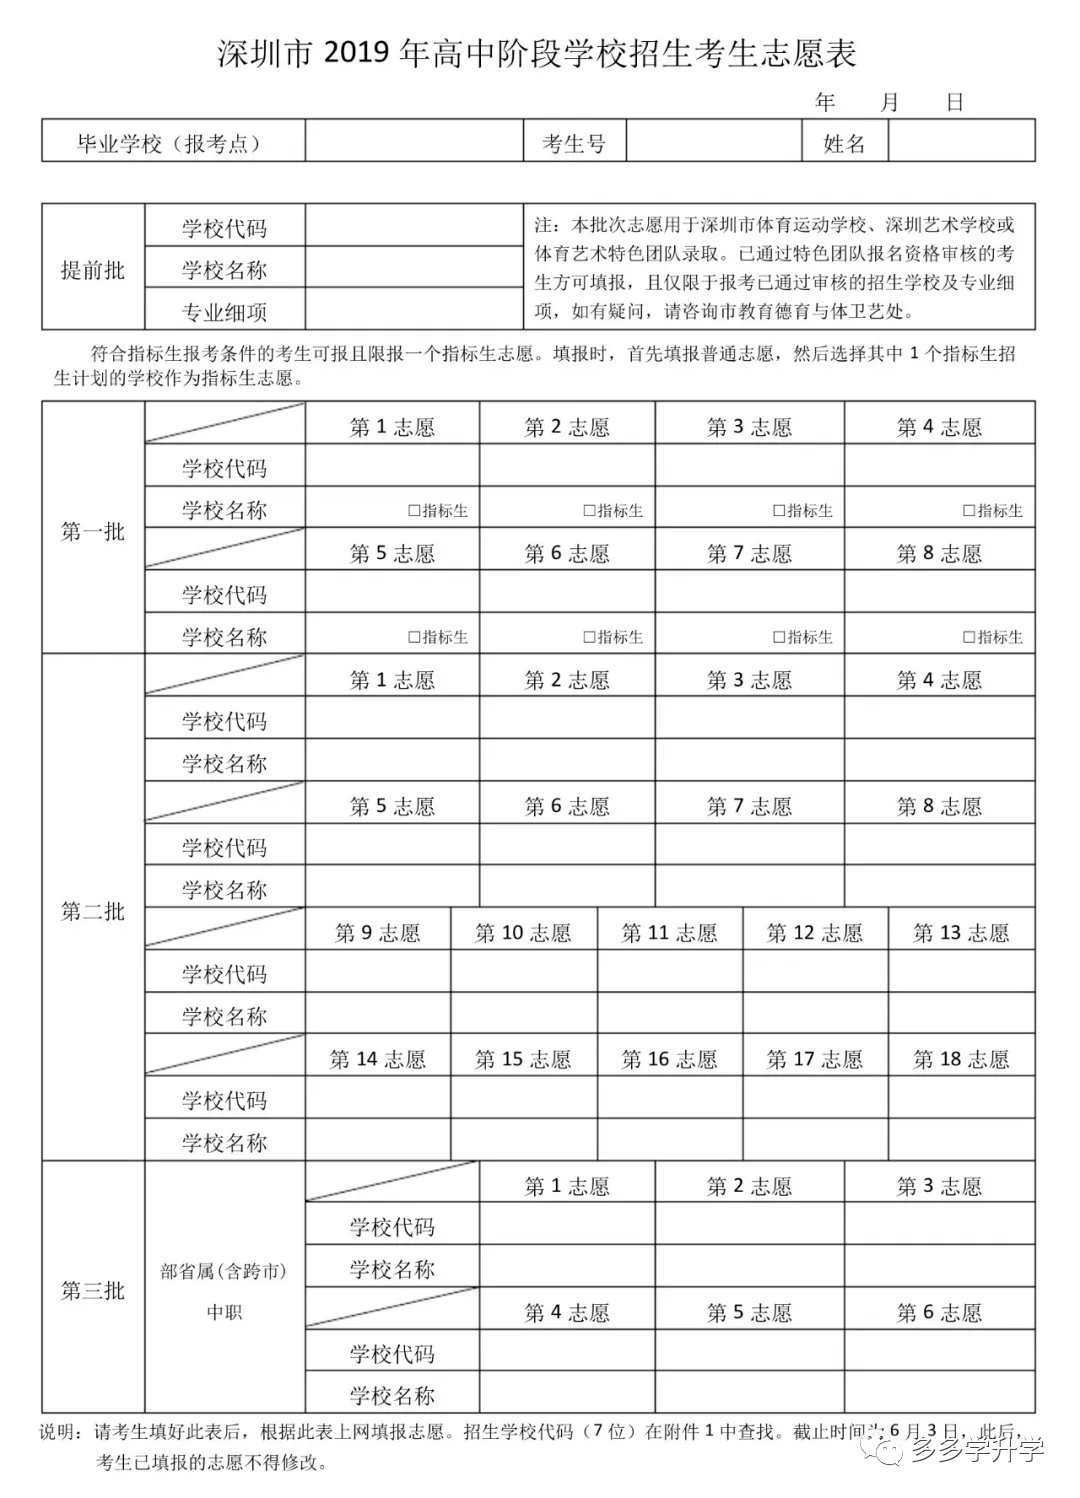 2020年深圳中考志愿填报时间-录取批次-志愿填报表